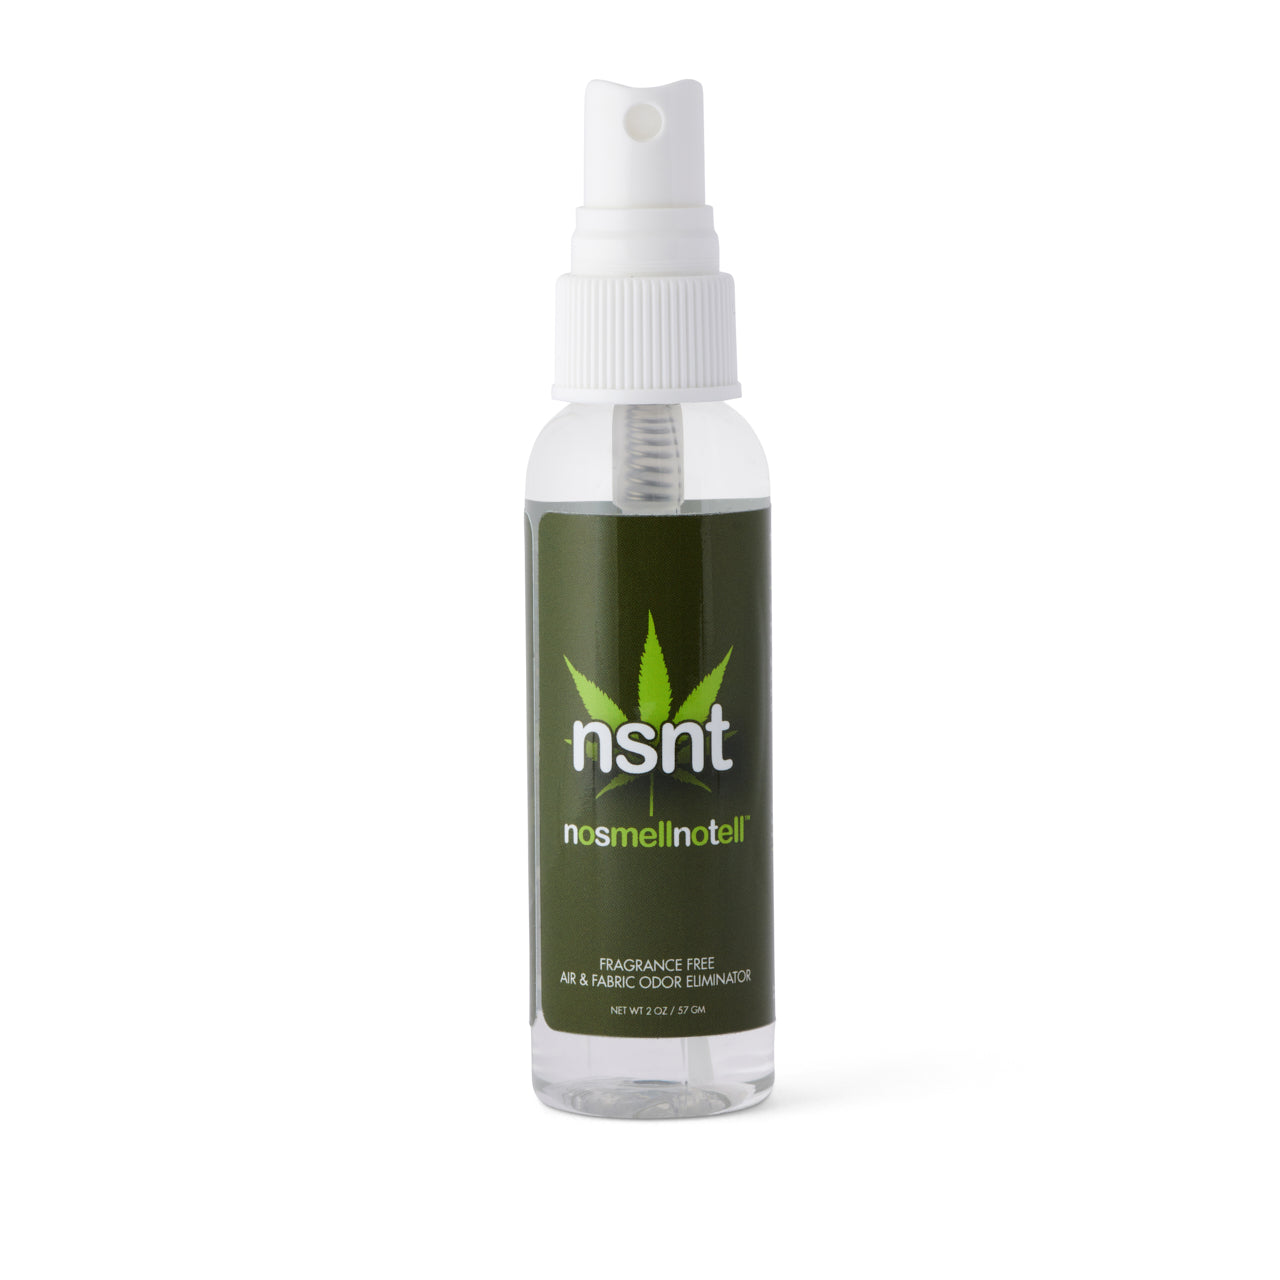 NSNT (No Smell No Tell) Spray